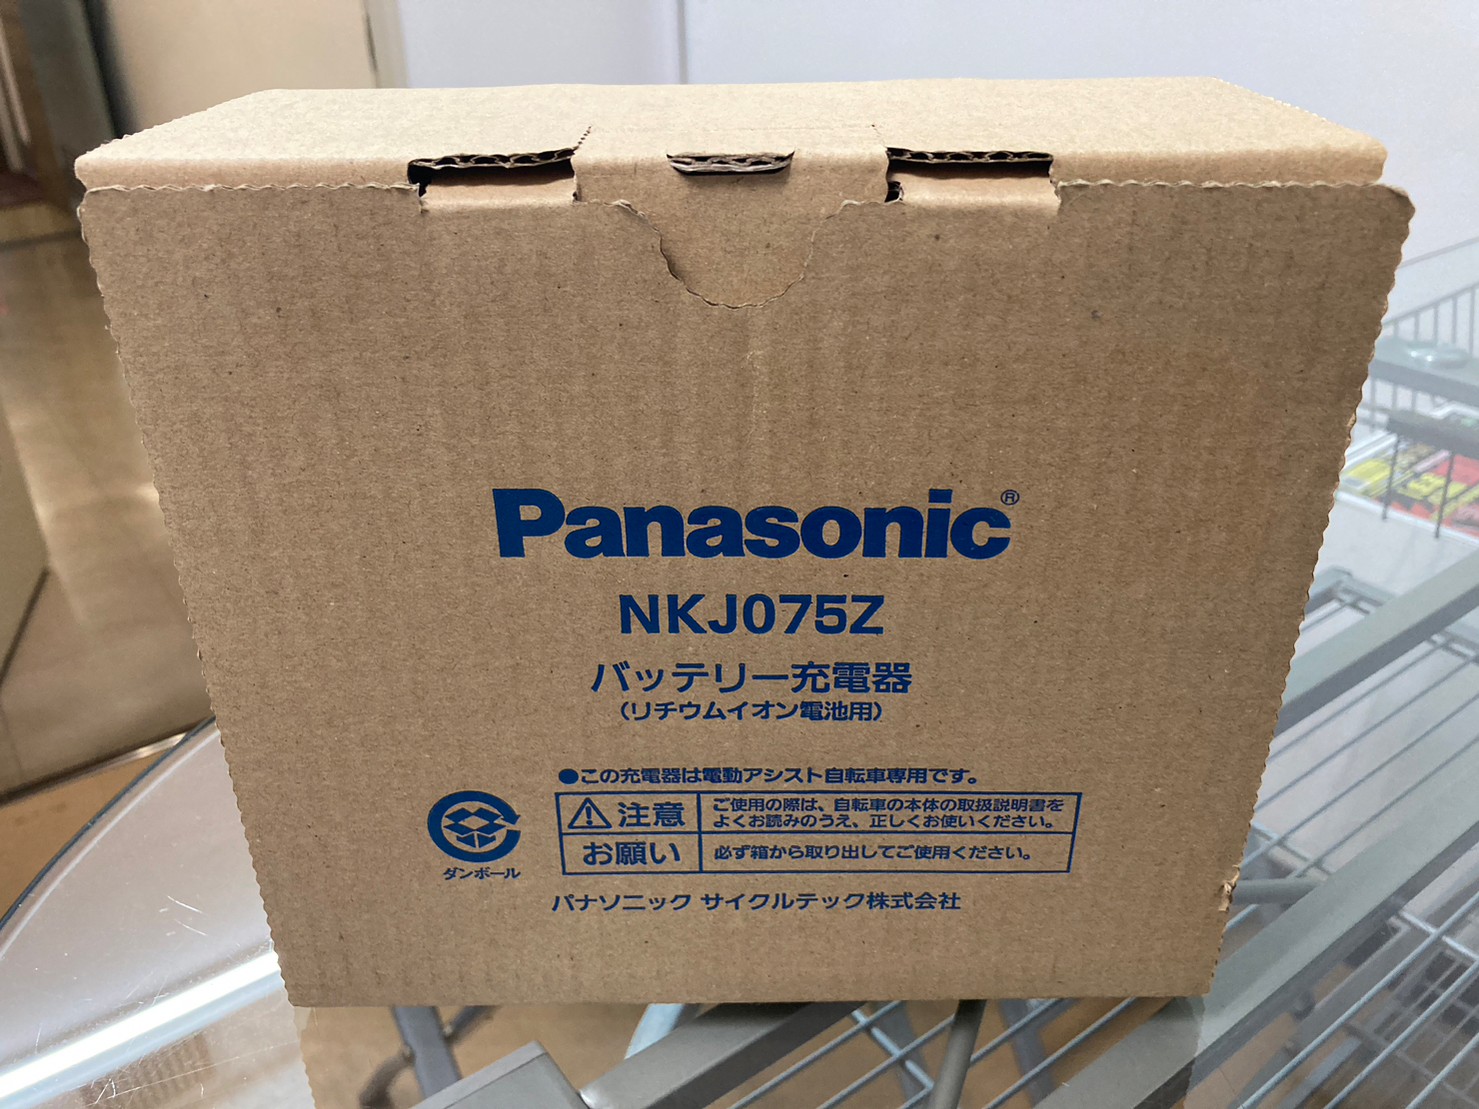 その他買取価格情報 大阪市北区 店頭でのお買取 新品未使用 Panasonic